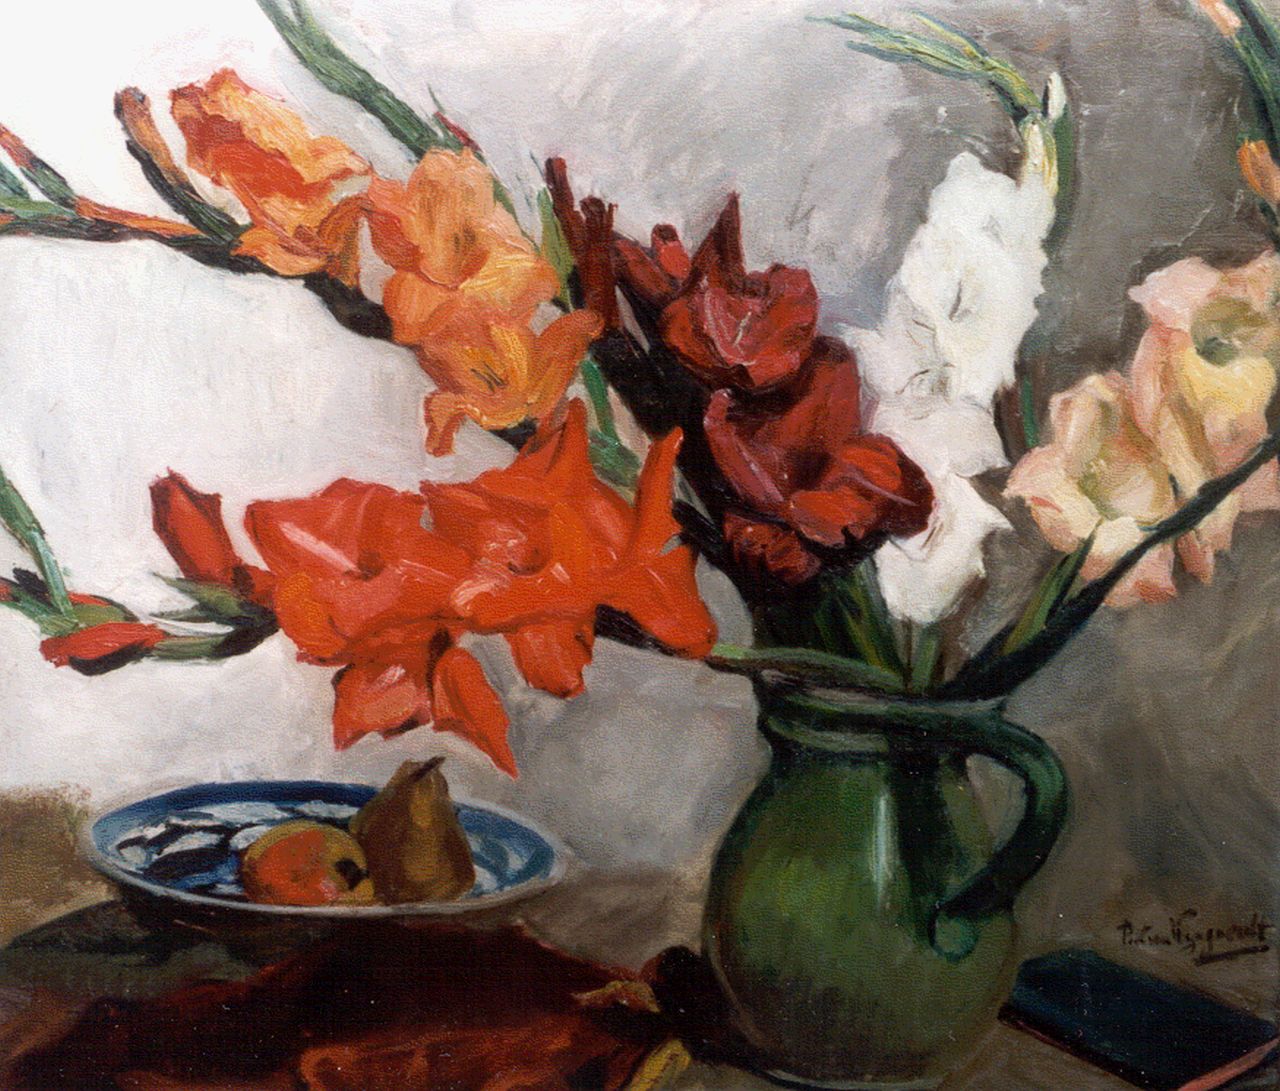 Wijngaerdt P.T. van | Petrus Theodorus 'Piet' van Wijngaerdt, Sword lilies, oil on canvas 70.0 x 80.0 cm, signed l.r.